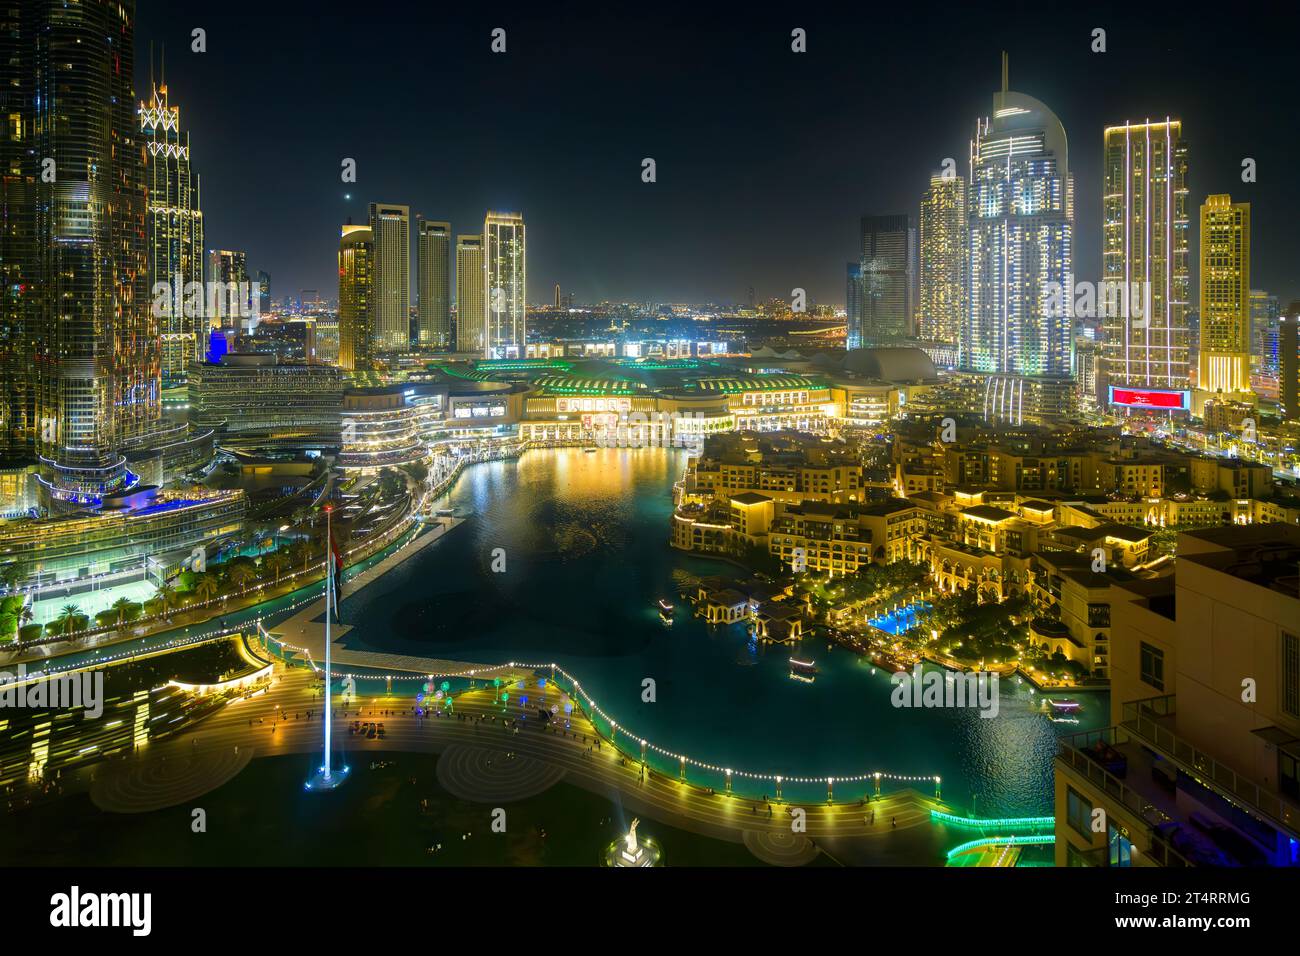 Les eaux de la fontaine de Dubaï entourées de bâtiments illuminés et le centre commercial de Dubaï la nuit au centre-ville de Dubaï, Émirats arabes Unis. Banque D'Images